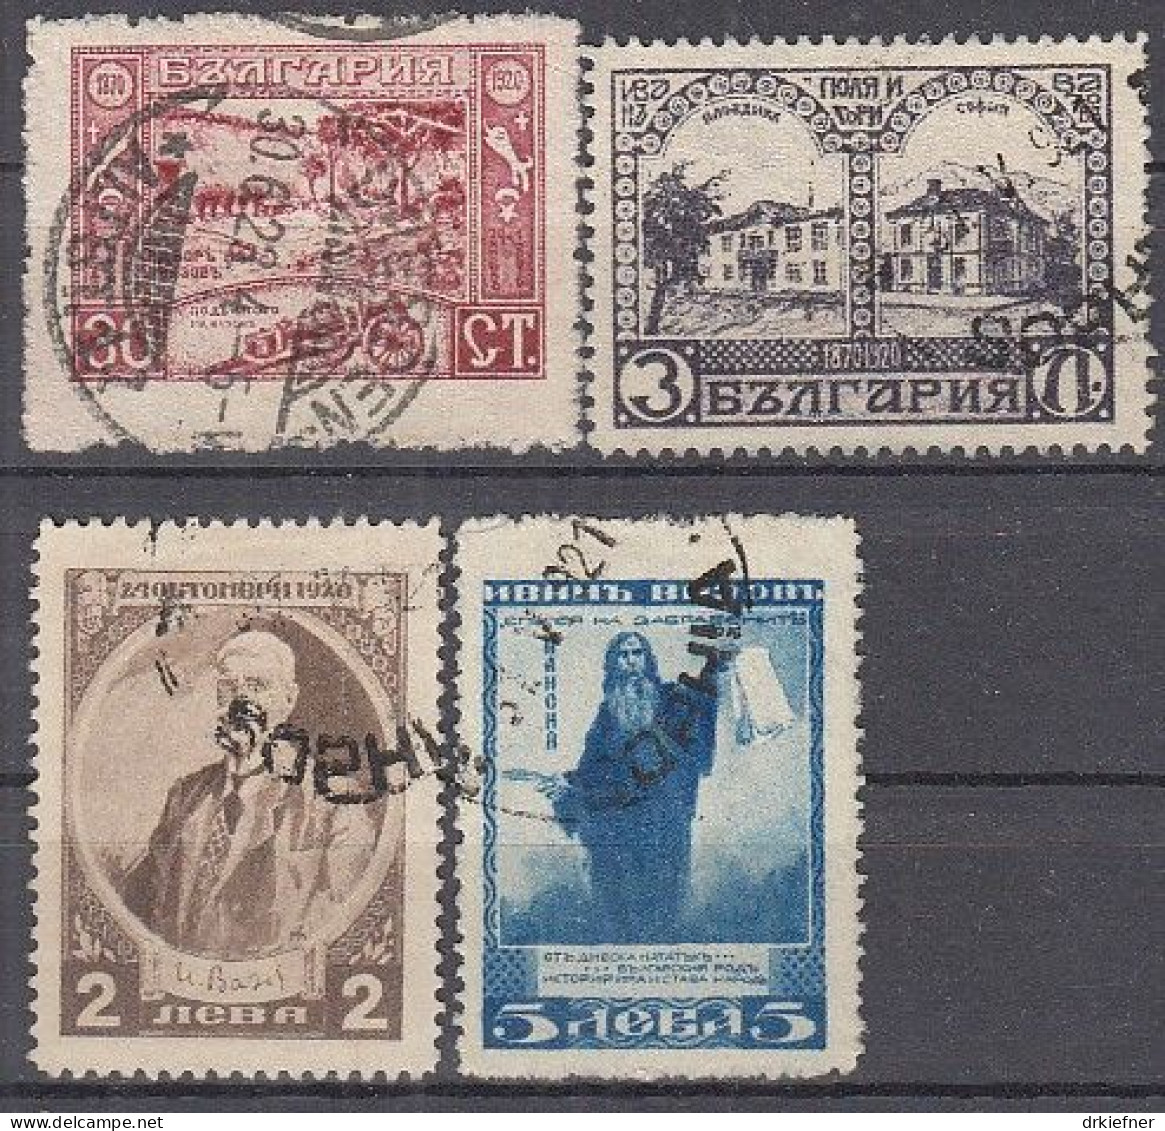 BULGARIEN  145, 148-150, Gestempelt, Iwan Wasow, 1920 - Used Stamps